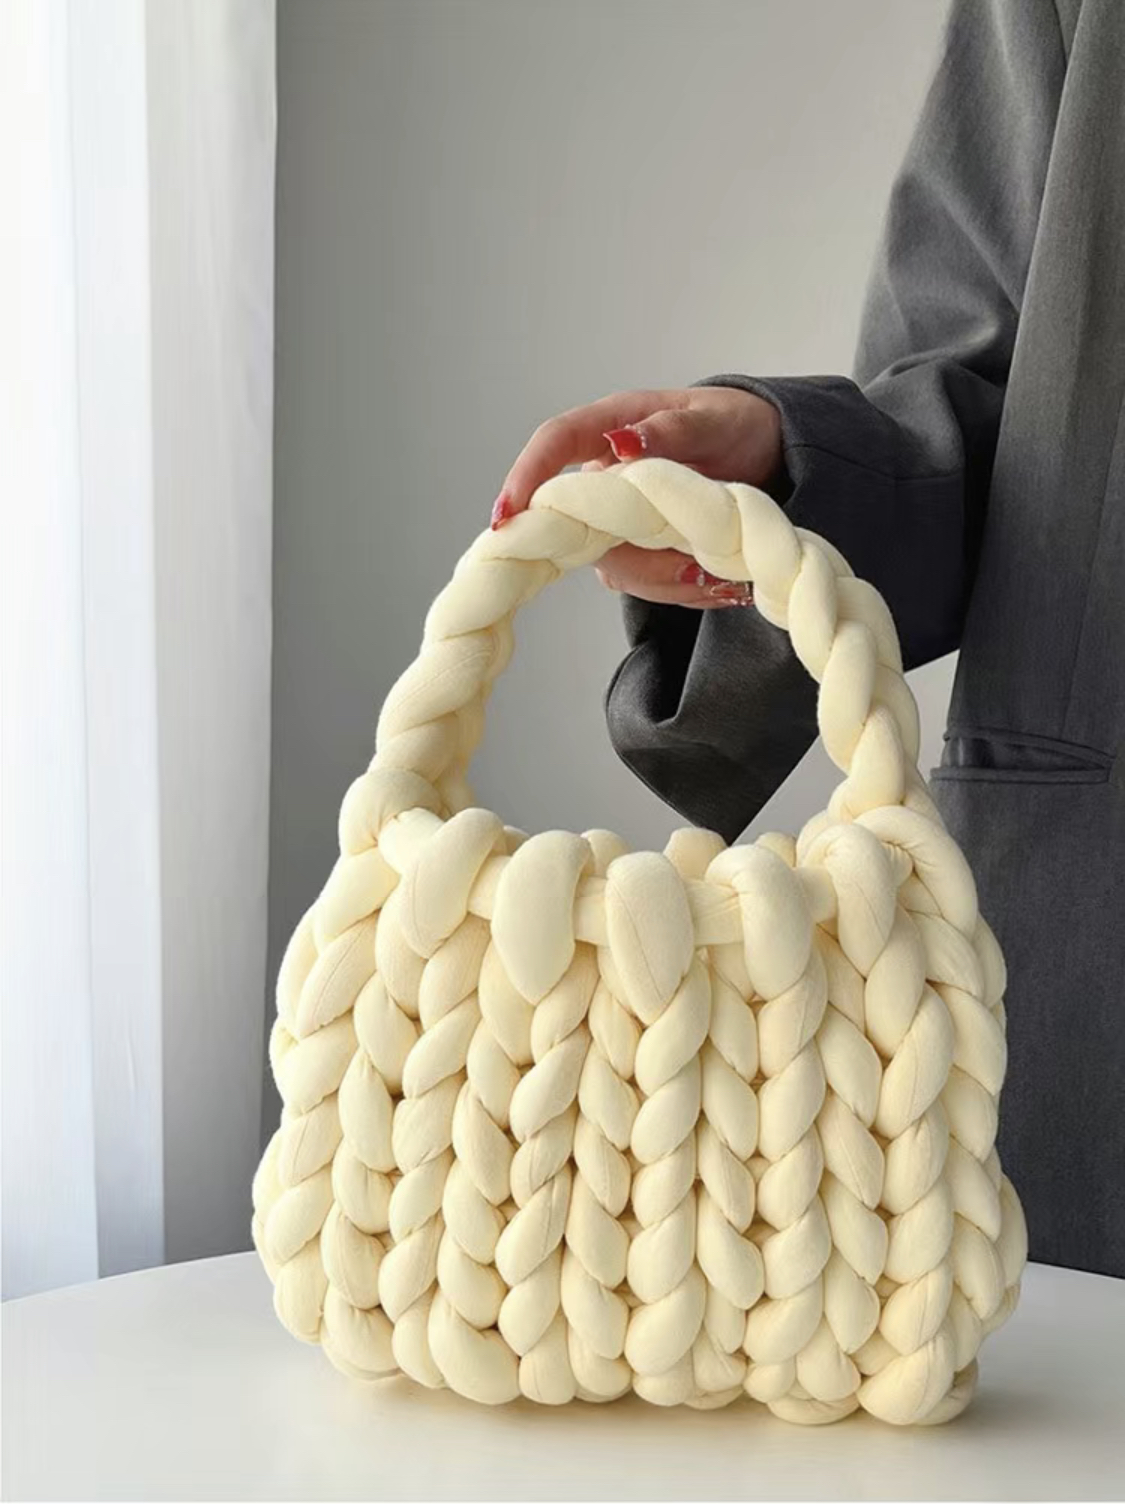 Bolsa de ombro de tricô grossa e volumosa de lã gigante tecida à mão